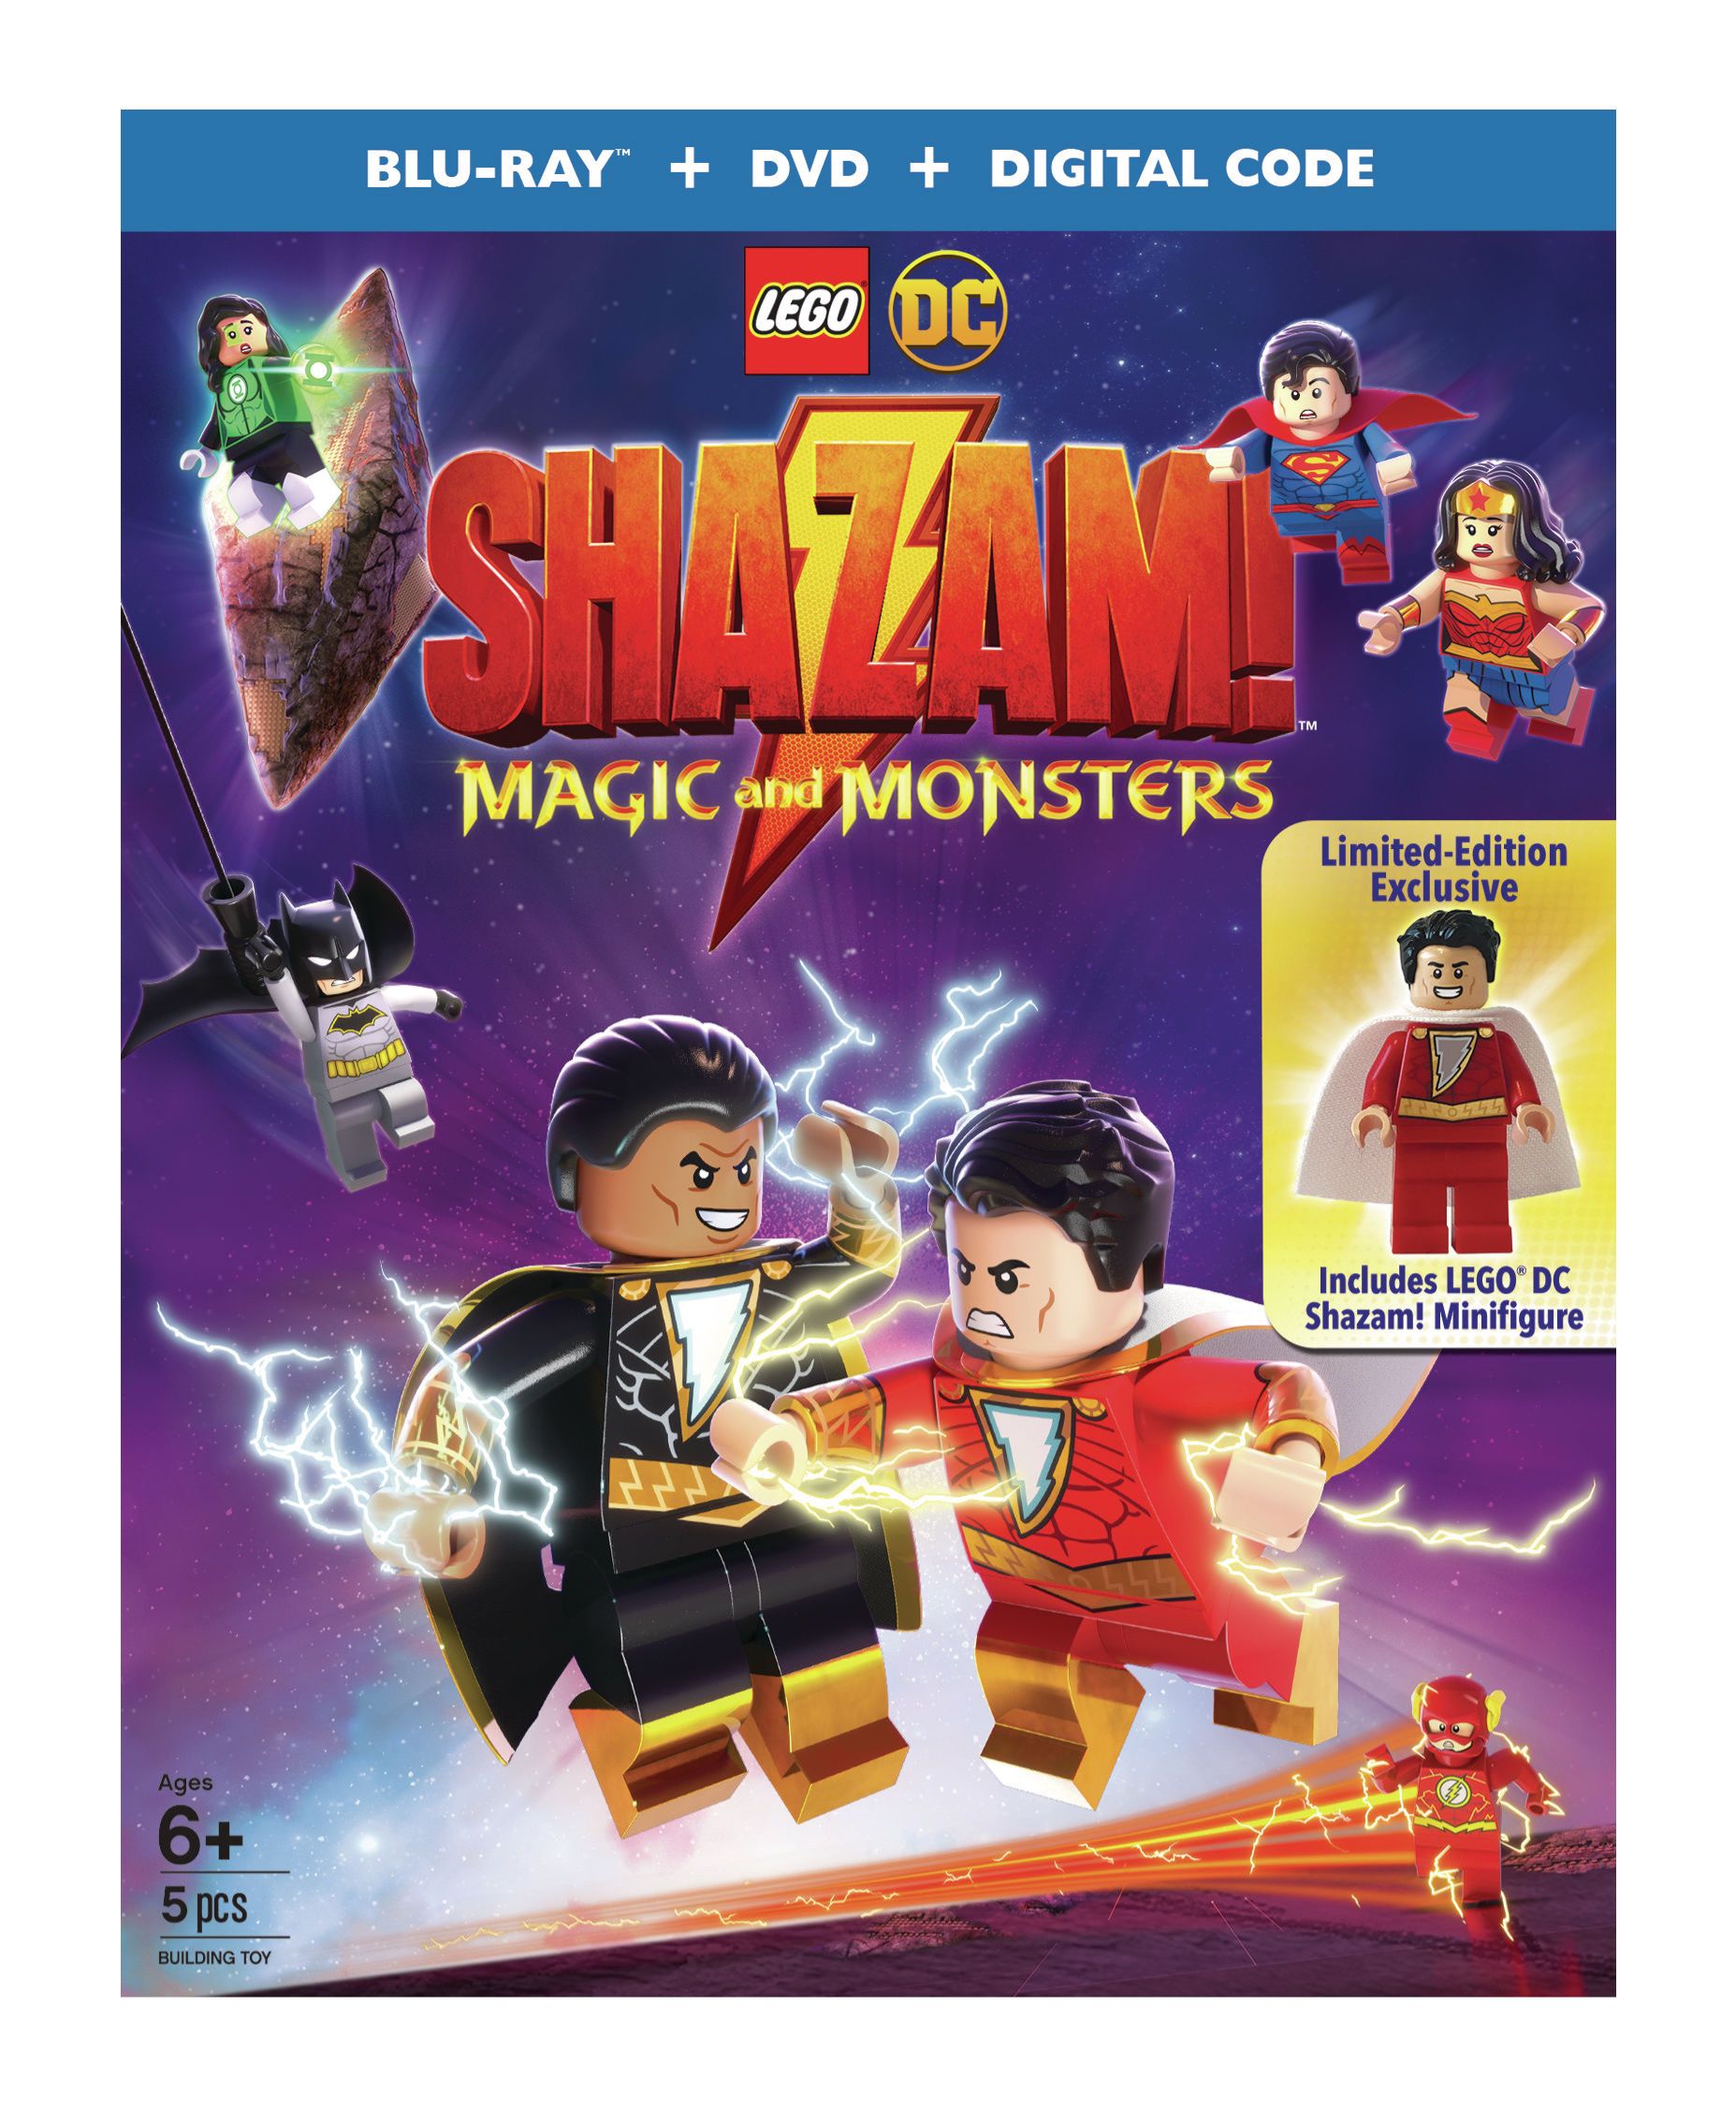 LEGO DC: Shazam! Magic and Monsters Image 3